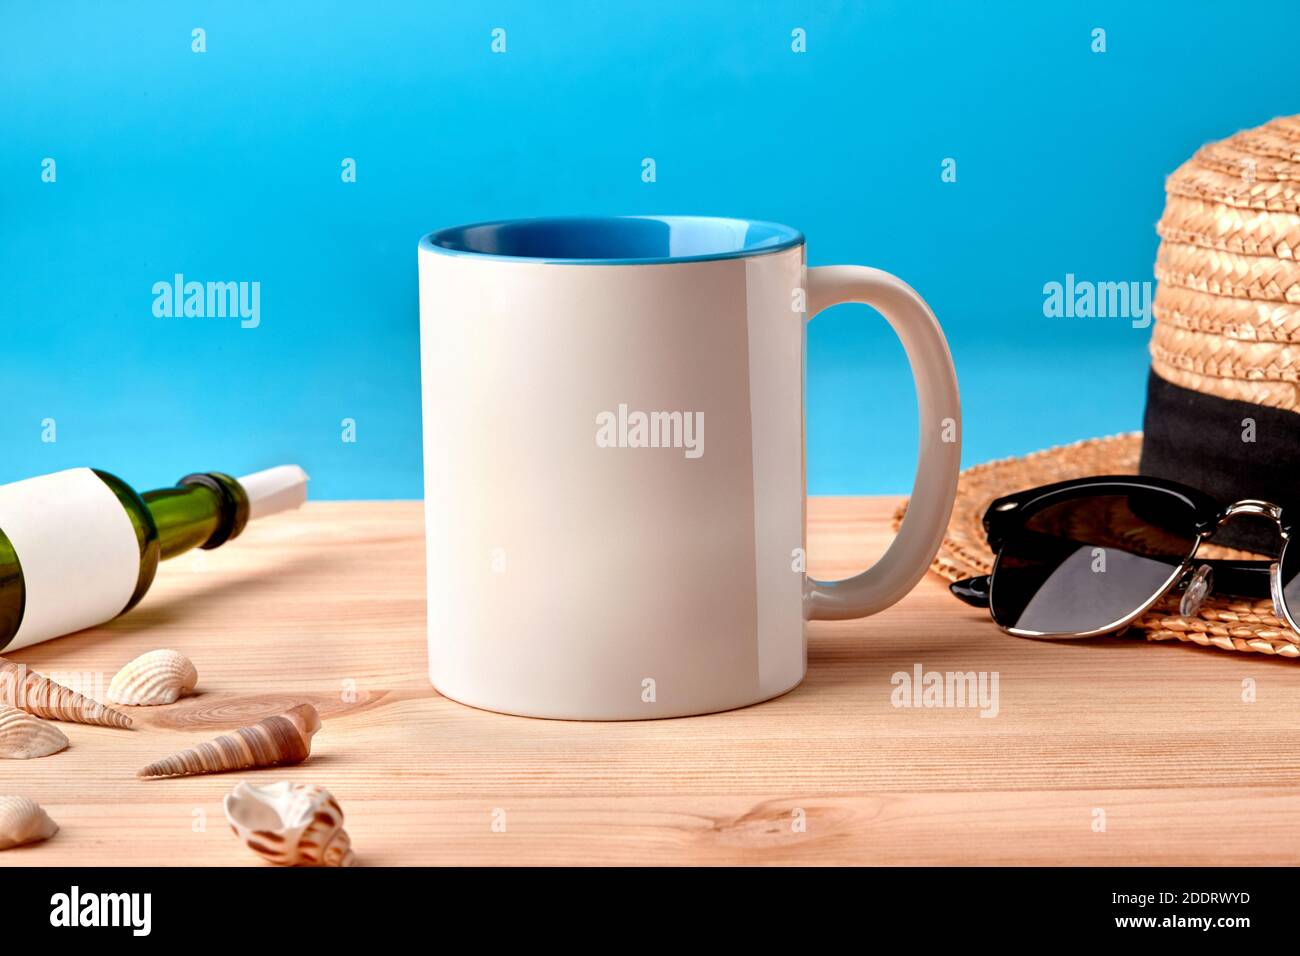 Mug en céramique blanche sur un bureau en bois à côté des coquillages, bouteille avec feuille de papier enroulée, chapeau de paille et lunettes de soleil noires, fond bleu Banque D'Images